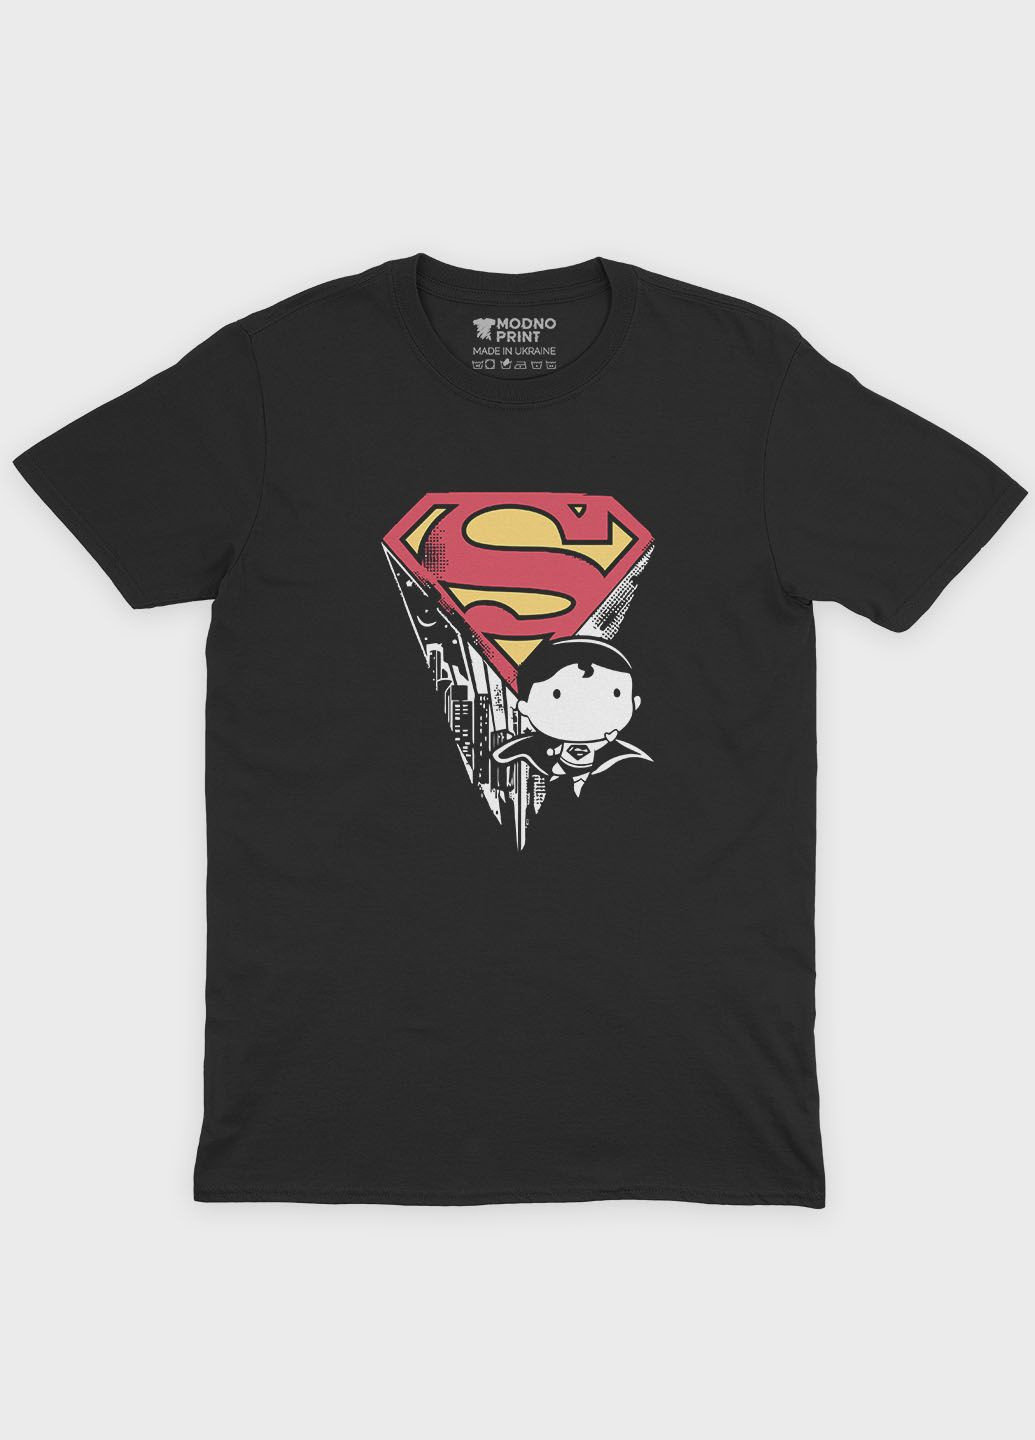 Черная демисезонная футболка для мальчика с принтом супергероя - супермен (ts001-1-bl-006-009-004-b) Modno